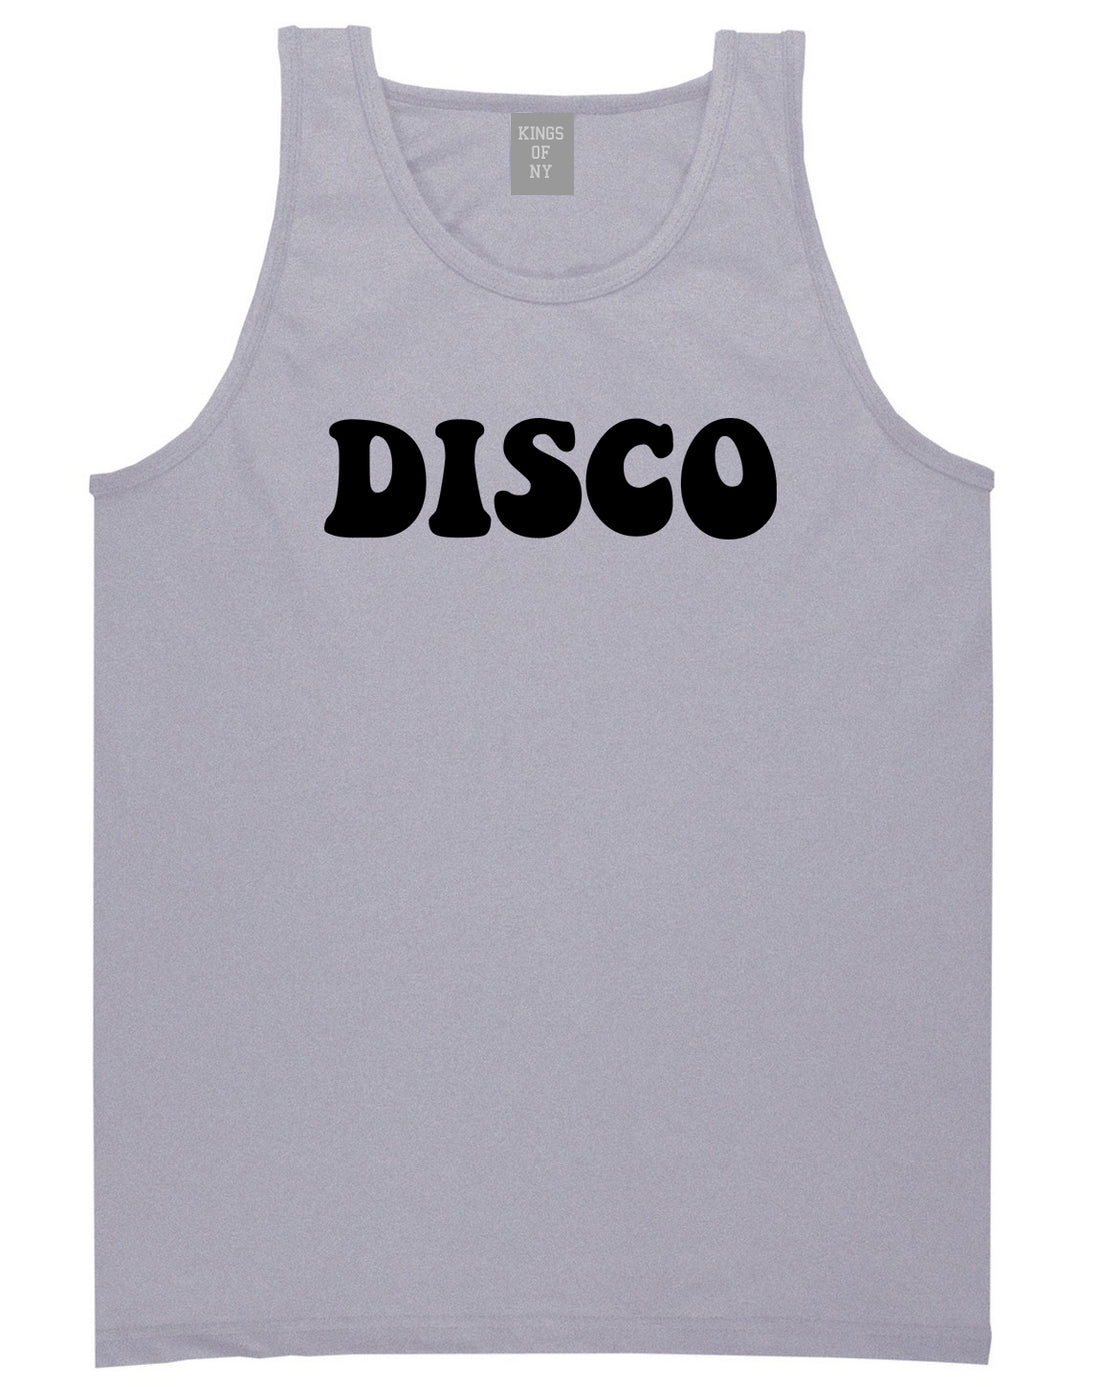 Disco_Music Mens Grey Tank Top Shirt by Kings Of NY